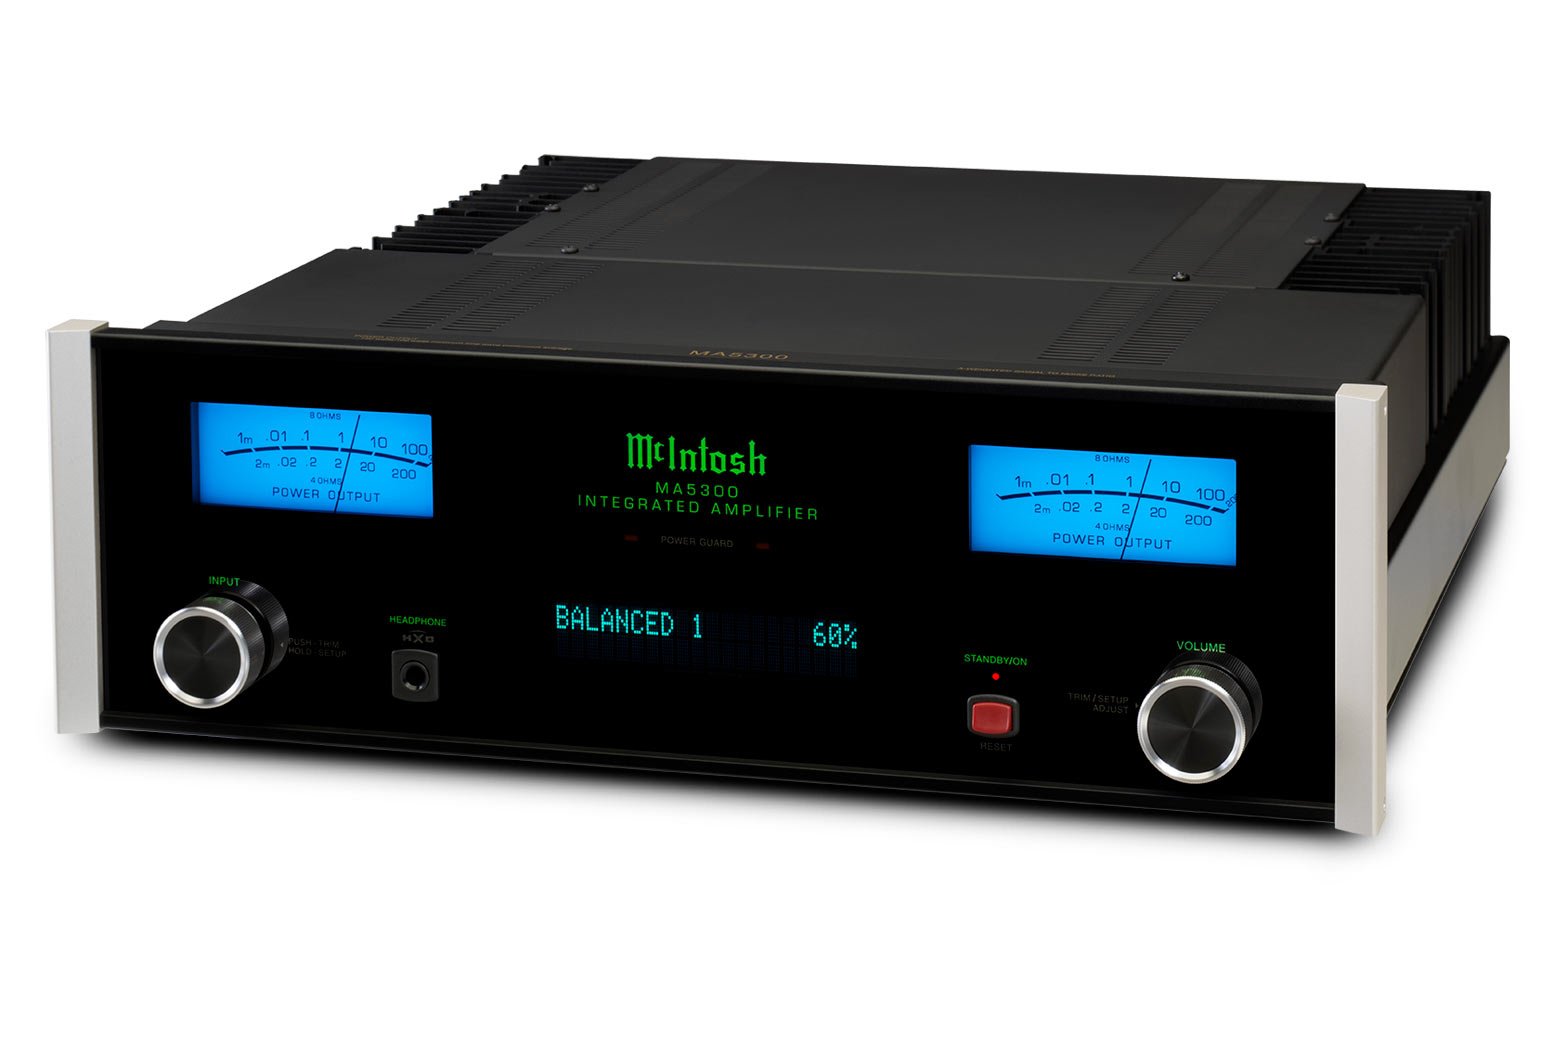 McIntosh MA5300 Integrated Amplifier